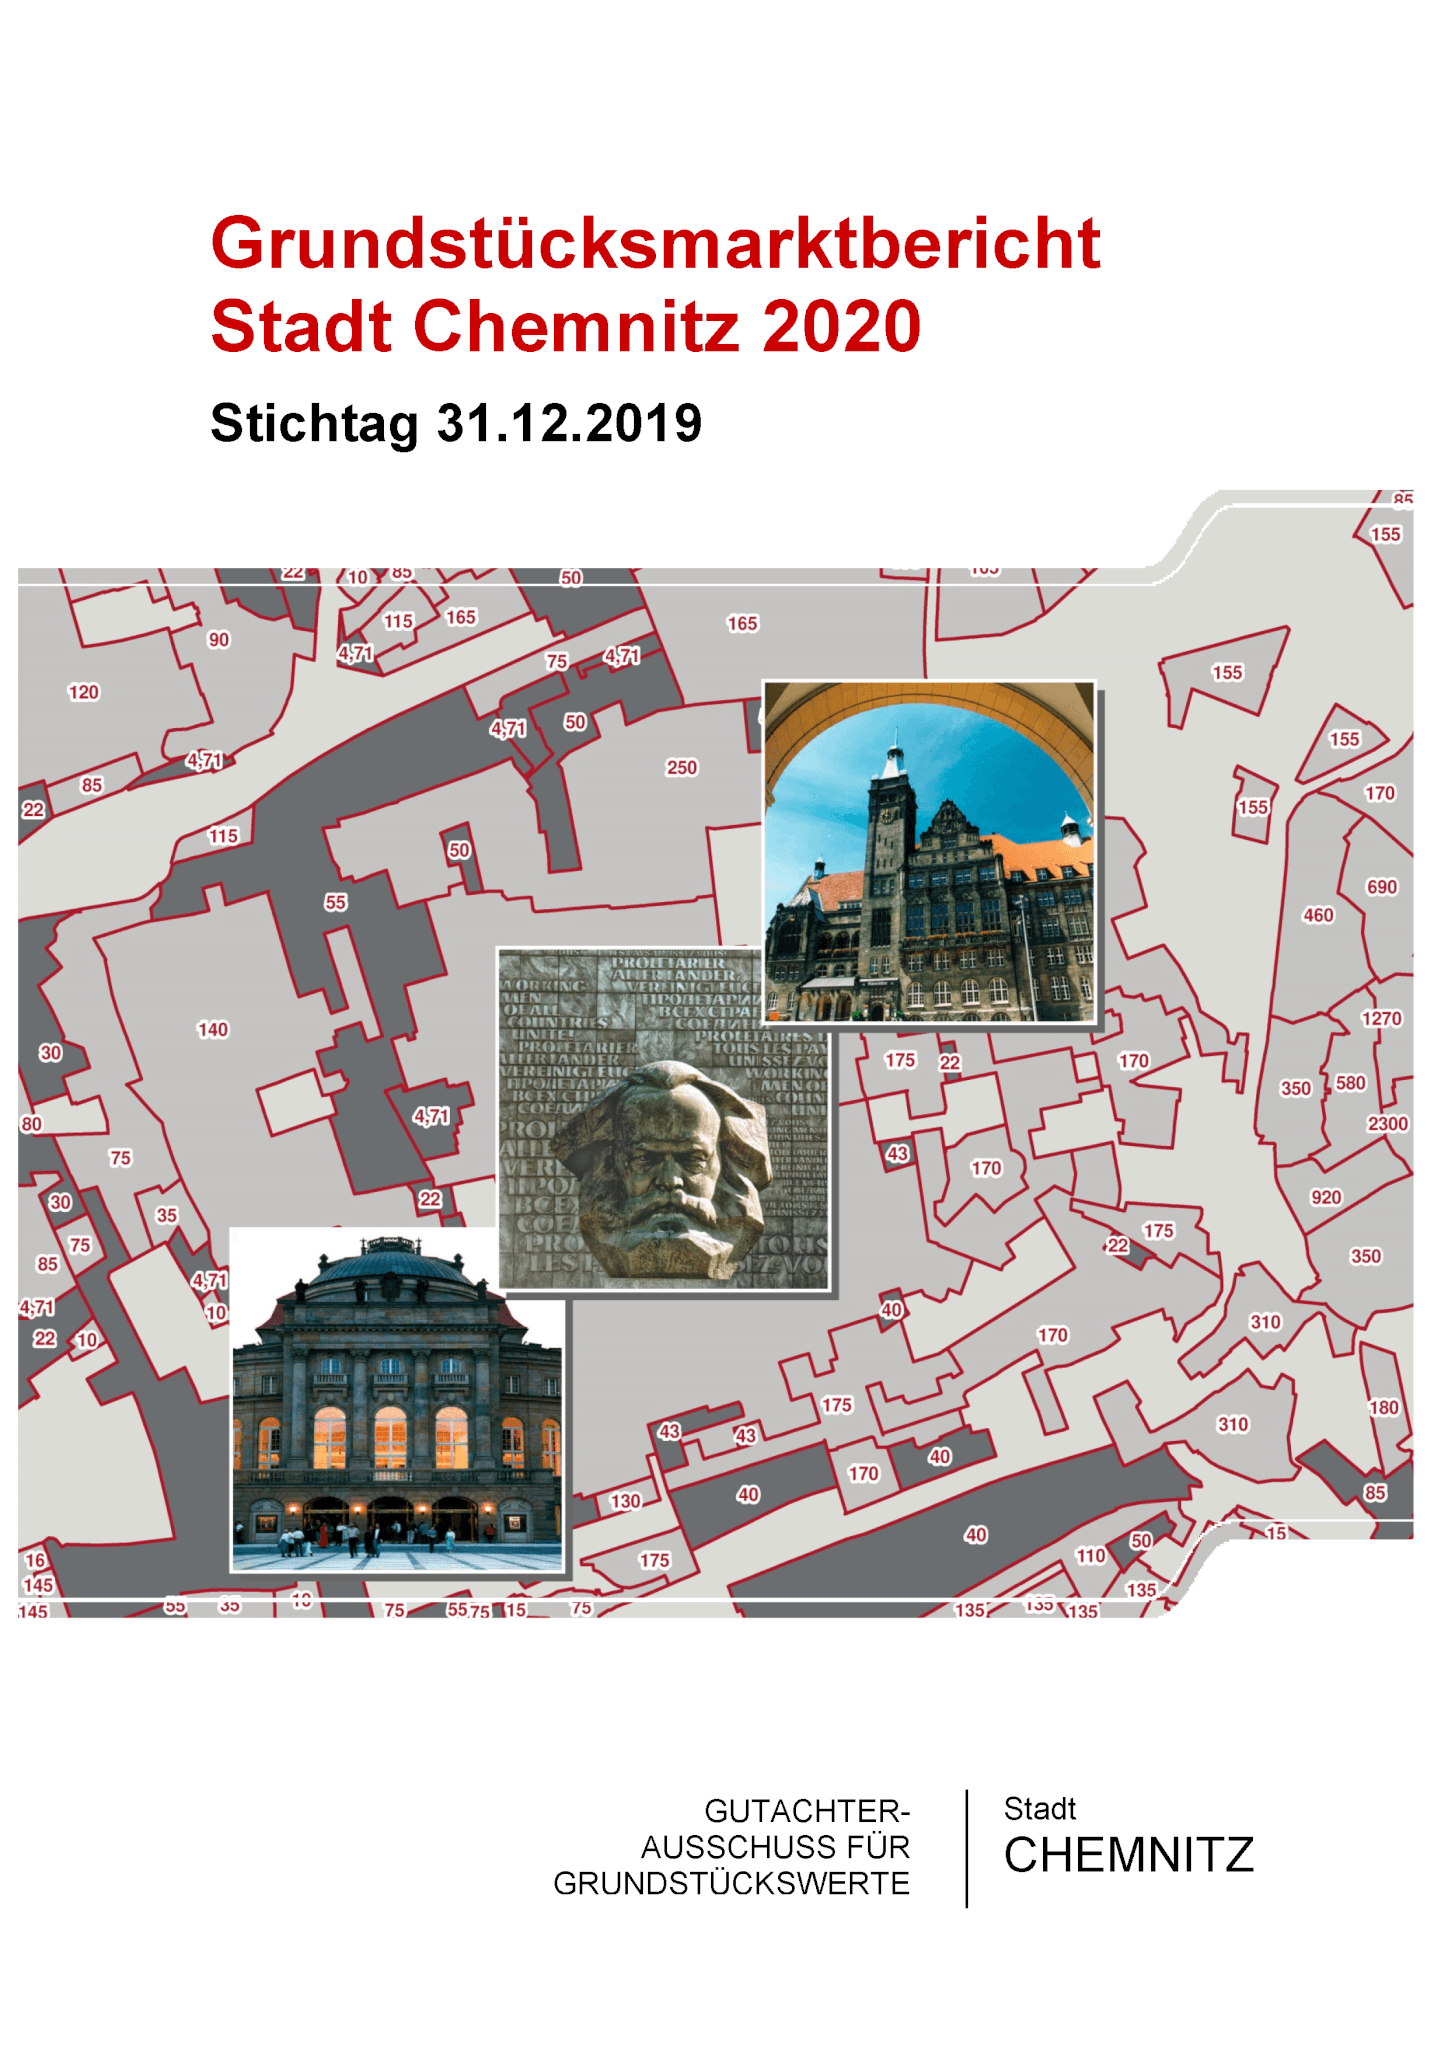 Grundstücksmarktbericht Chemnitz 2020 und neue Bodenrichtwerte veröffentlicht 1